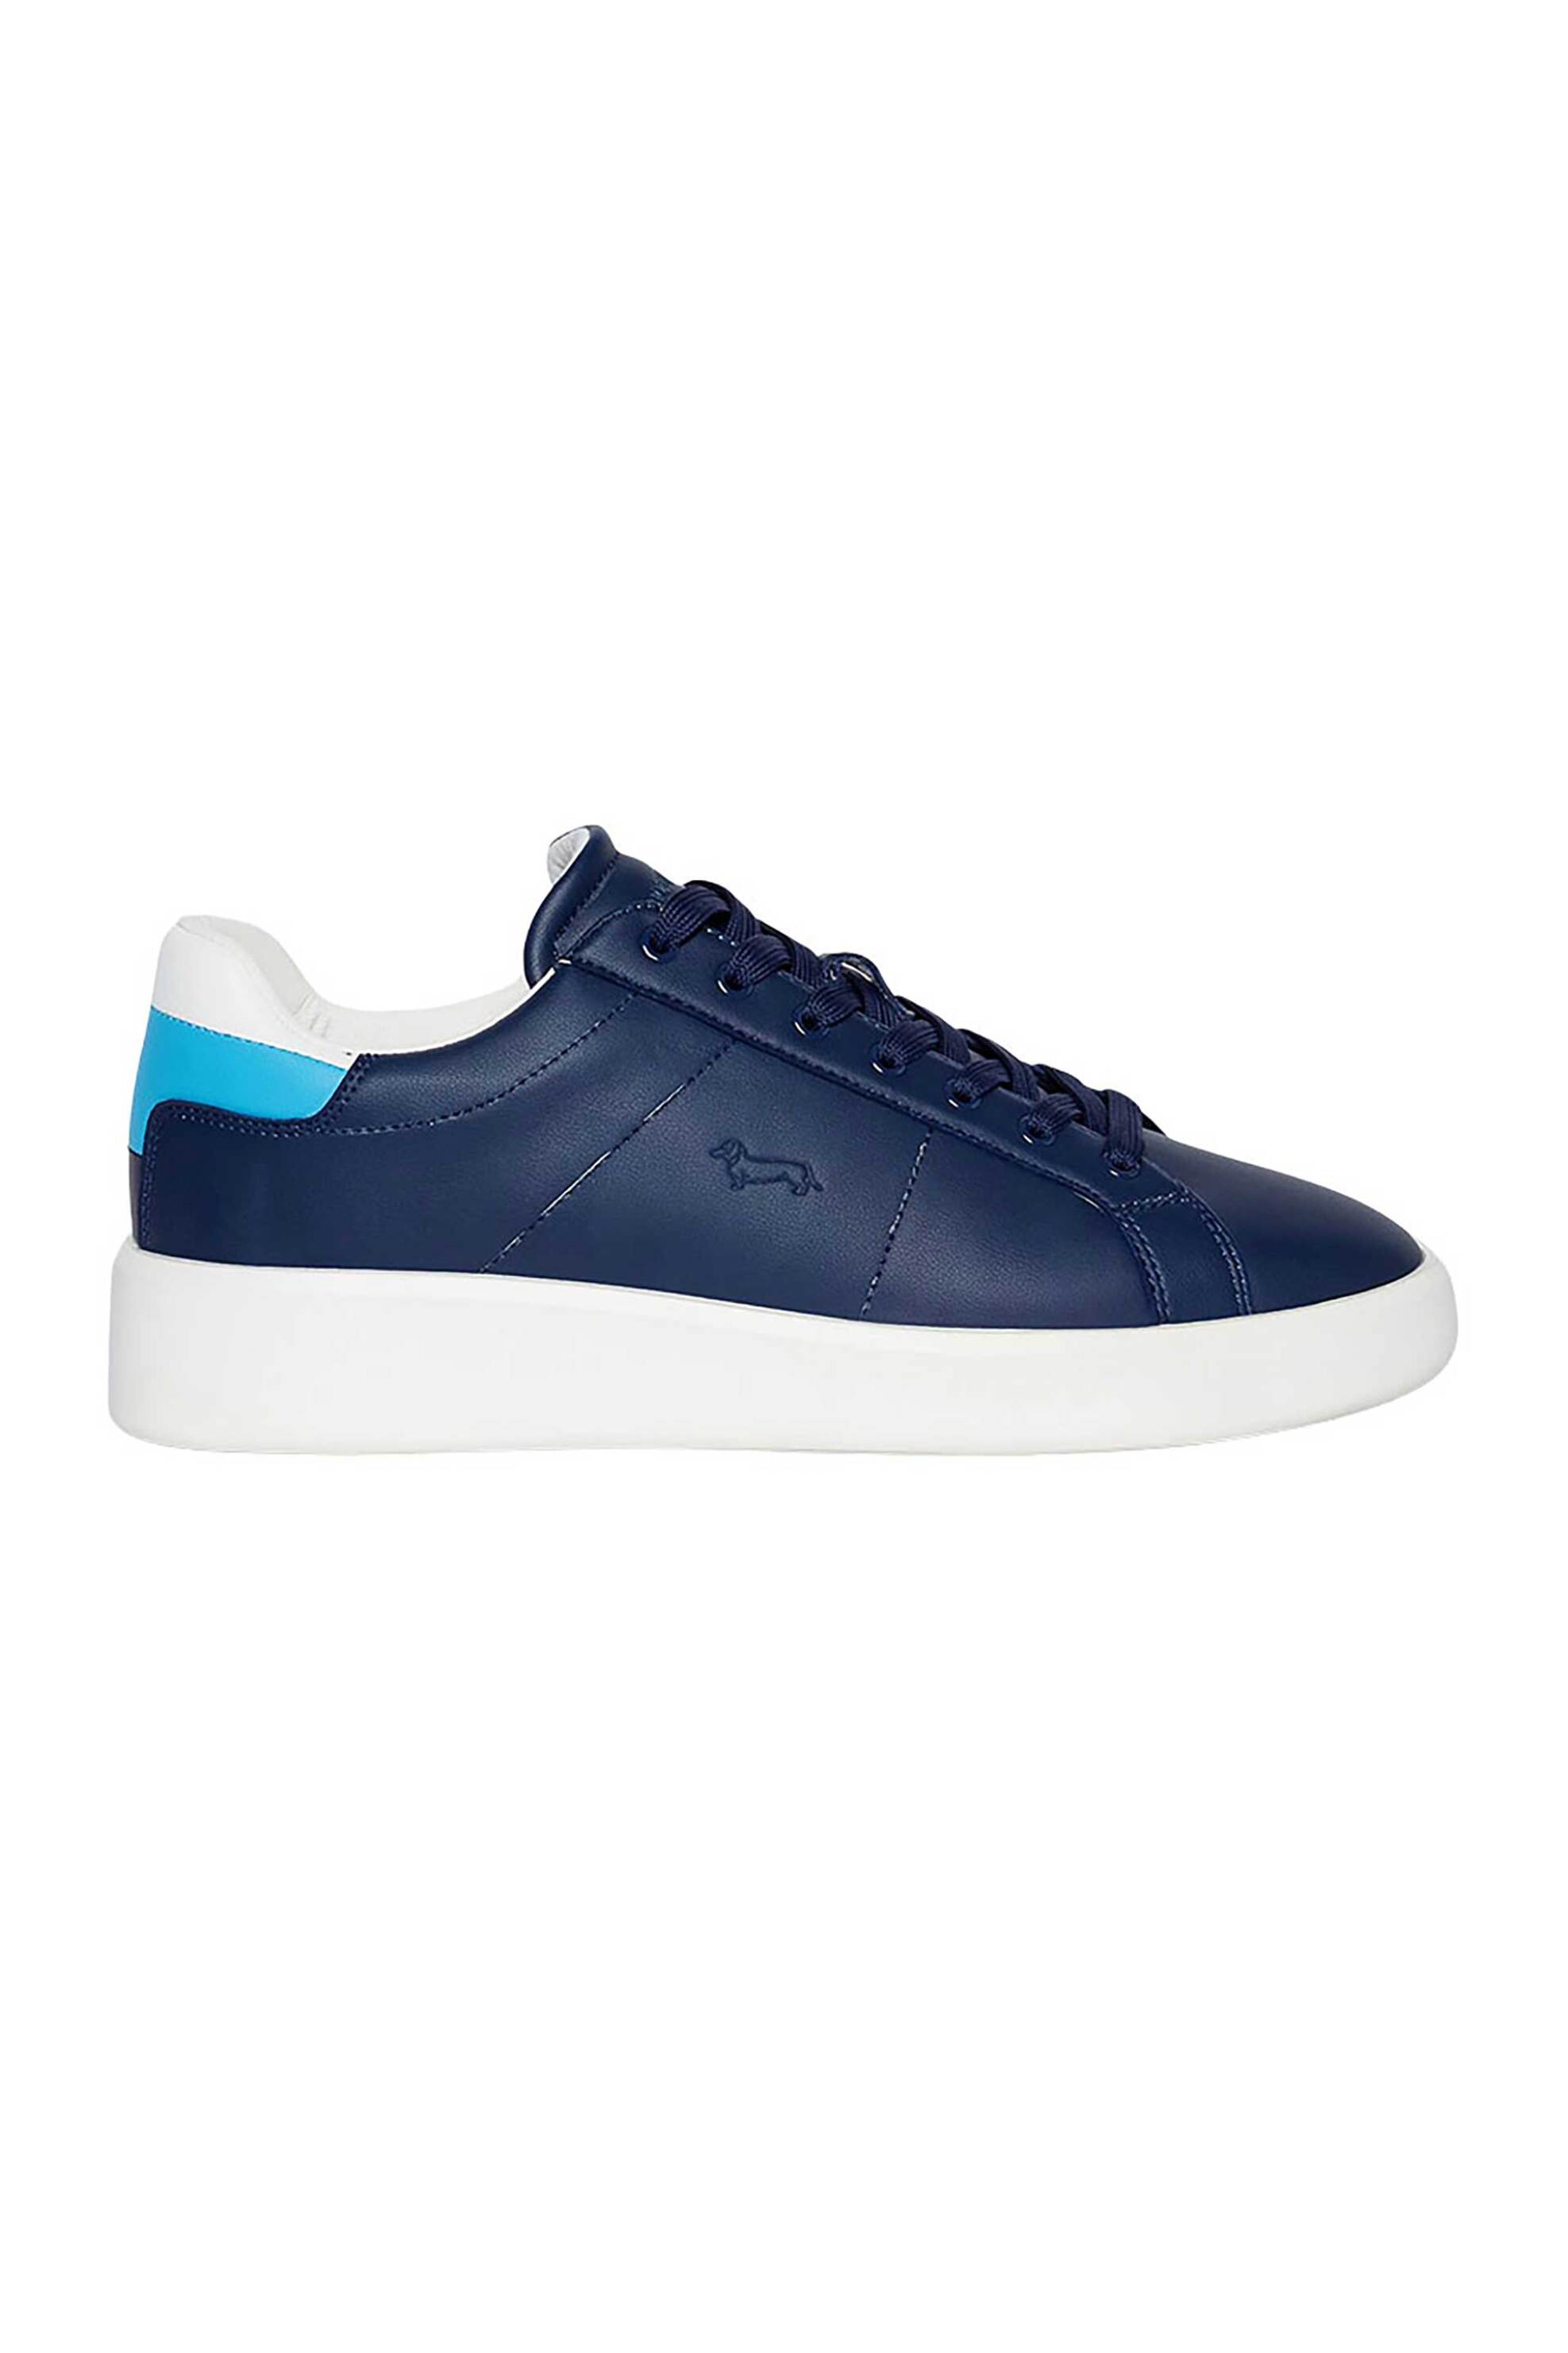 Ανδρική Μόδα > Ανδρικά Παπούτσια > Ανδρικά Sneakers Harmont & Blaine ανδρικά δερμάτινα sneakers - EFM241001-6000 Μπλε Σκούρο